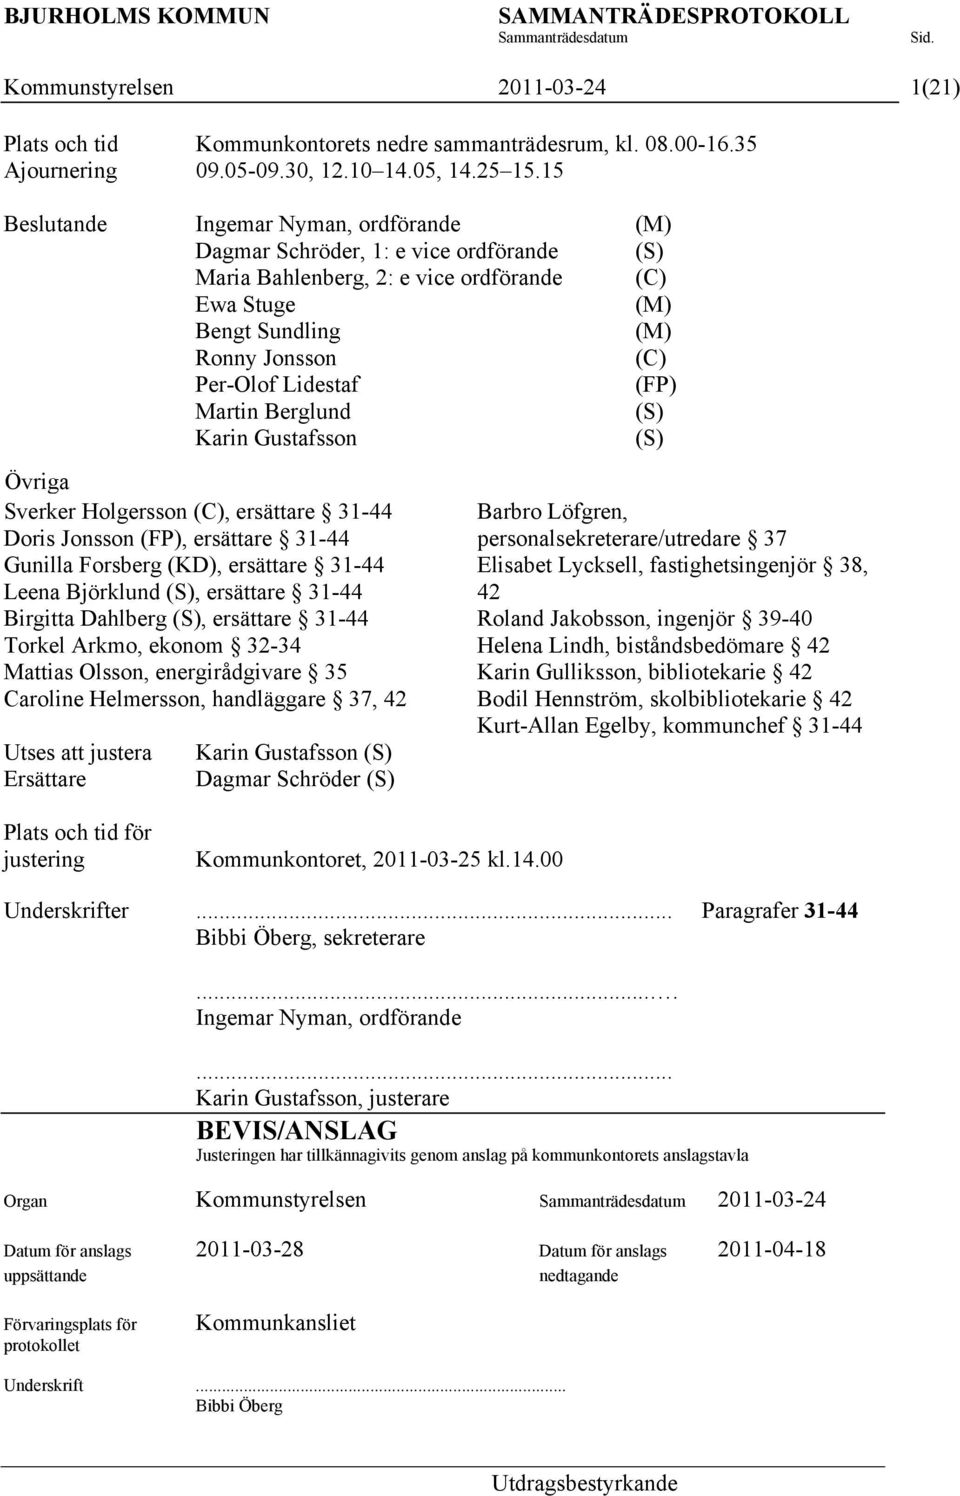 (FP) Martin Berglund (S) Karin Gustafsson (S) Övriga Sverker Holgersson (C), ersättare 31-44 Doris Jonsson (FP), ersättare 31-44 Gunilla Forsberg (KD), ersättare 31-44 Leena Björklund (S), ersättare